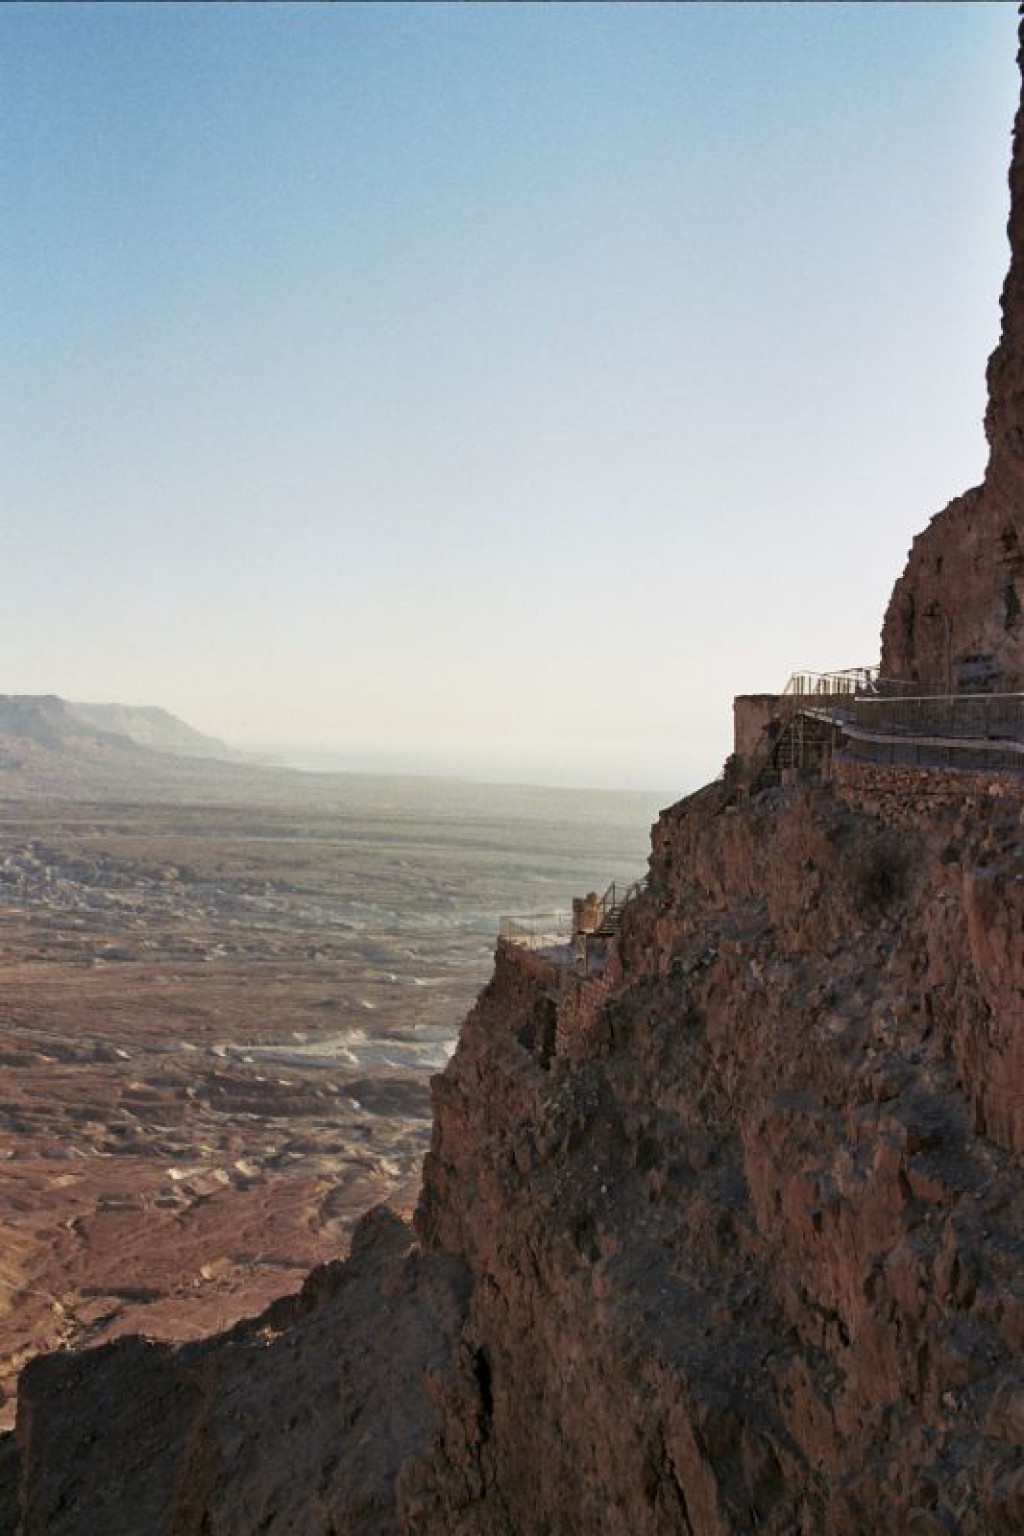 A view climbing town towards Herod's Palace.